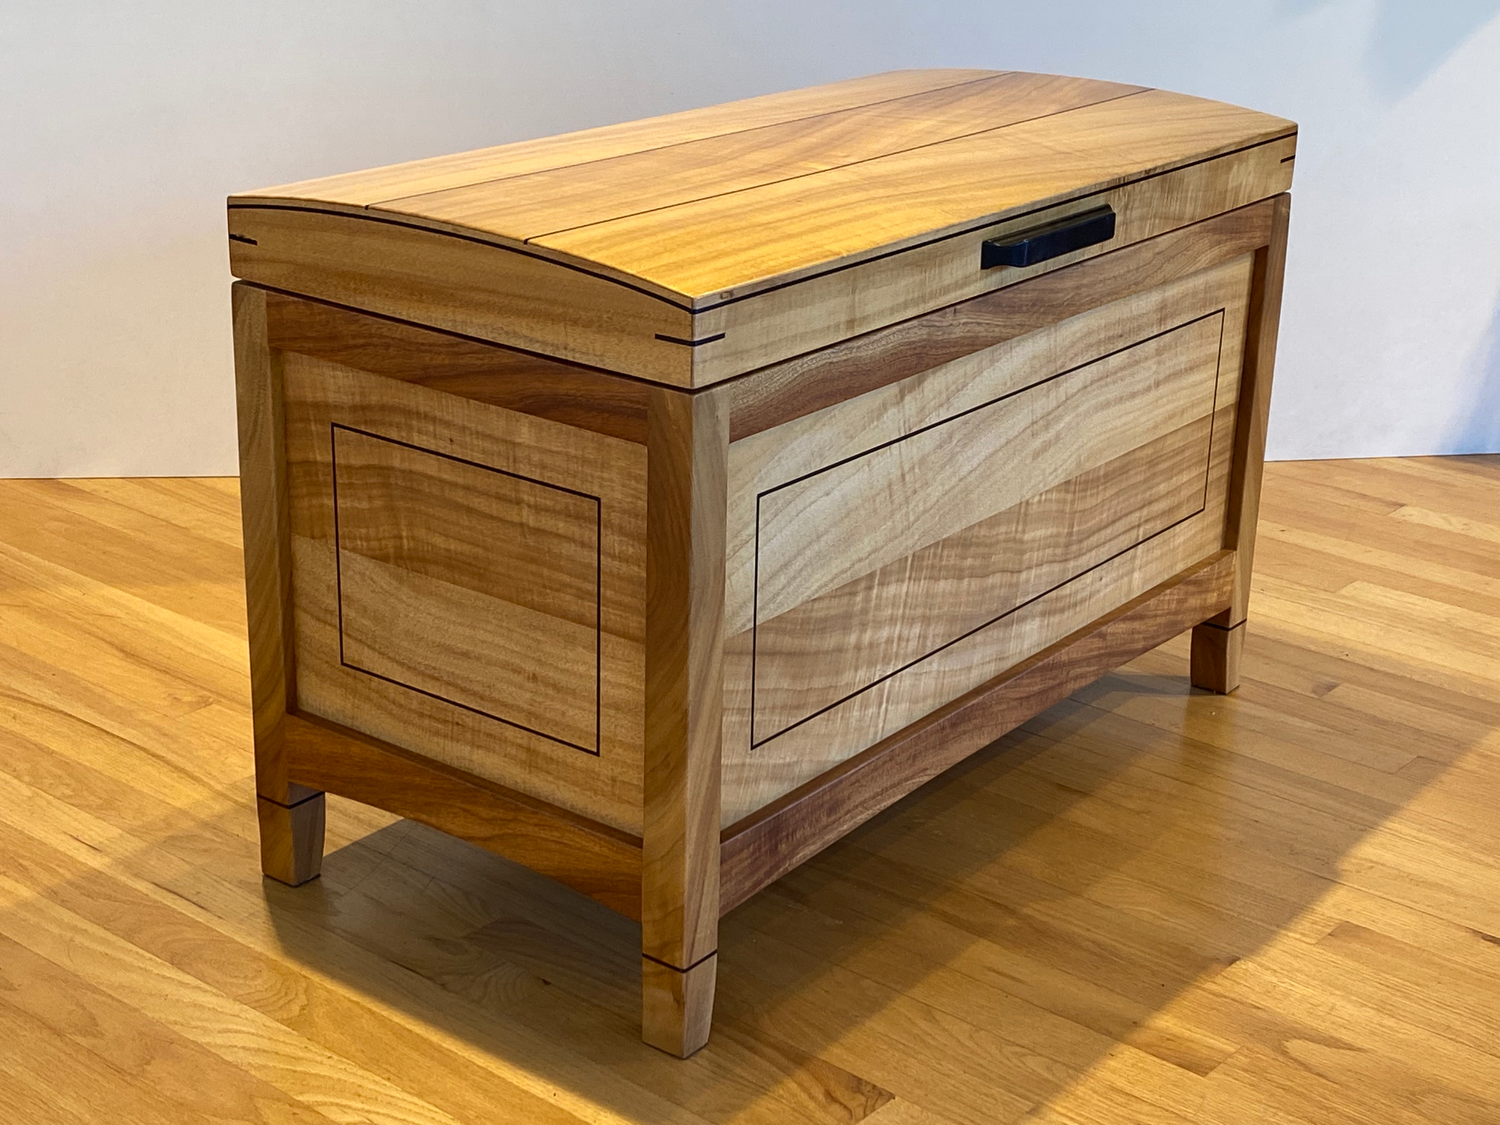 Koa Wood Furniture